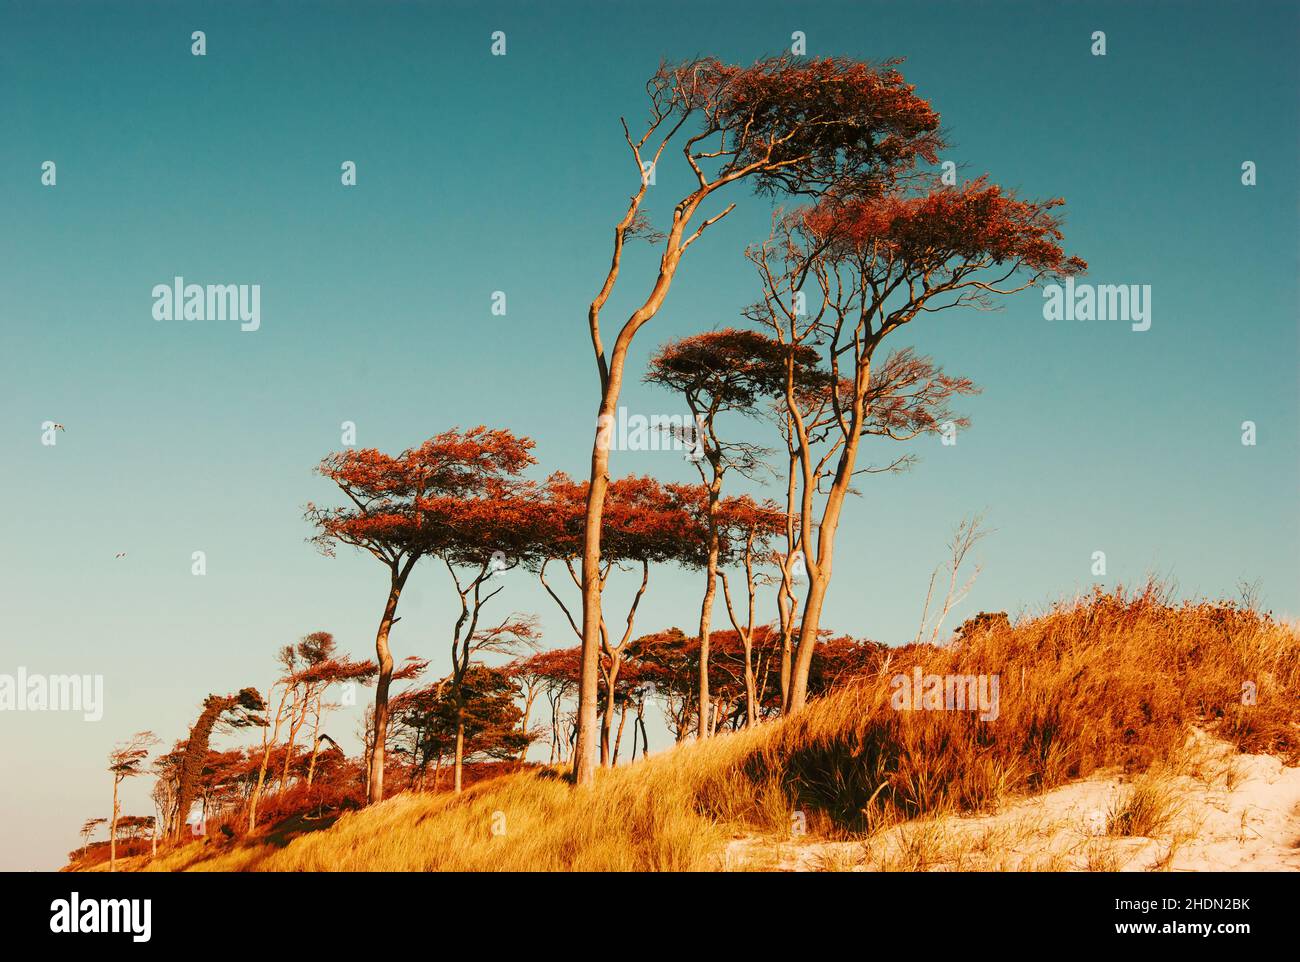 mar baltico, darss, alberi spazzati dal vento, mar baltico Foto Stock